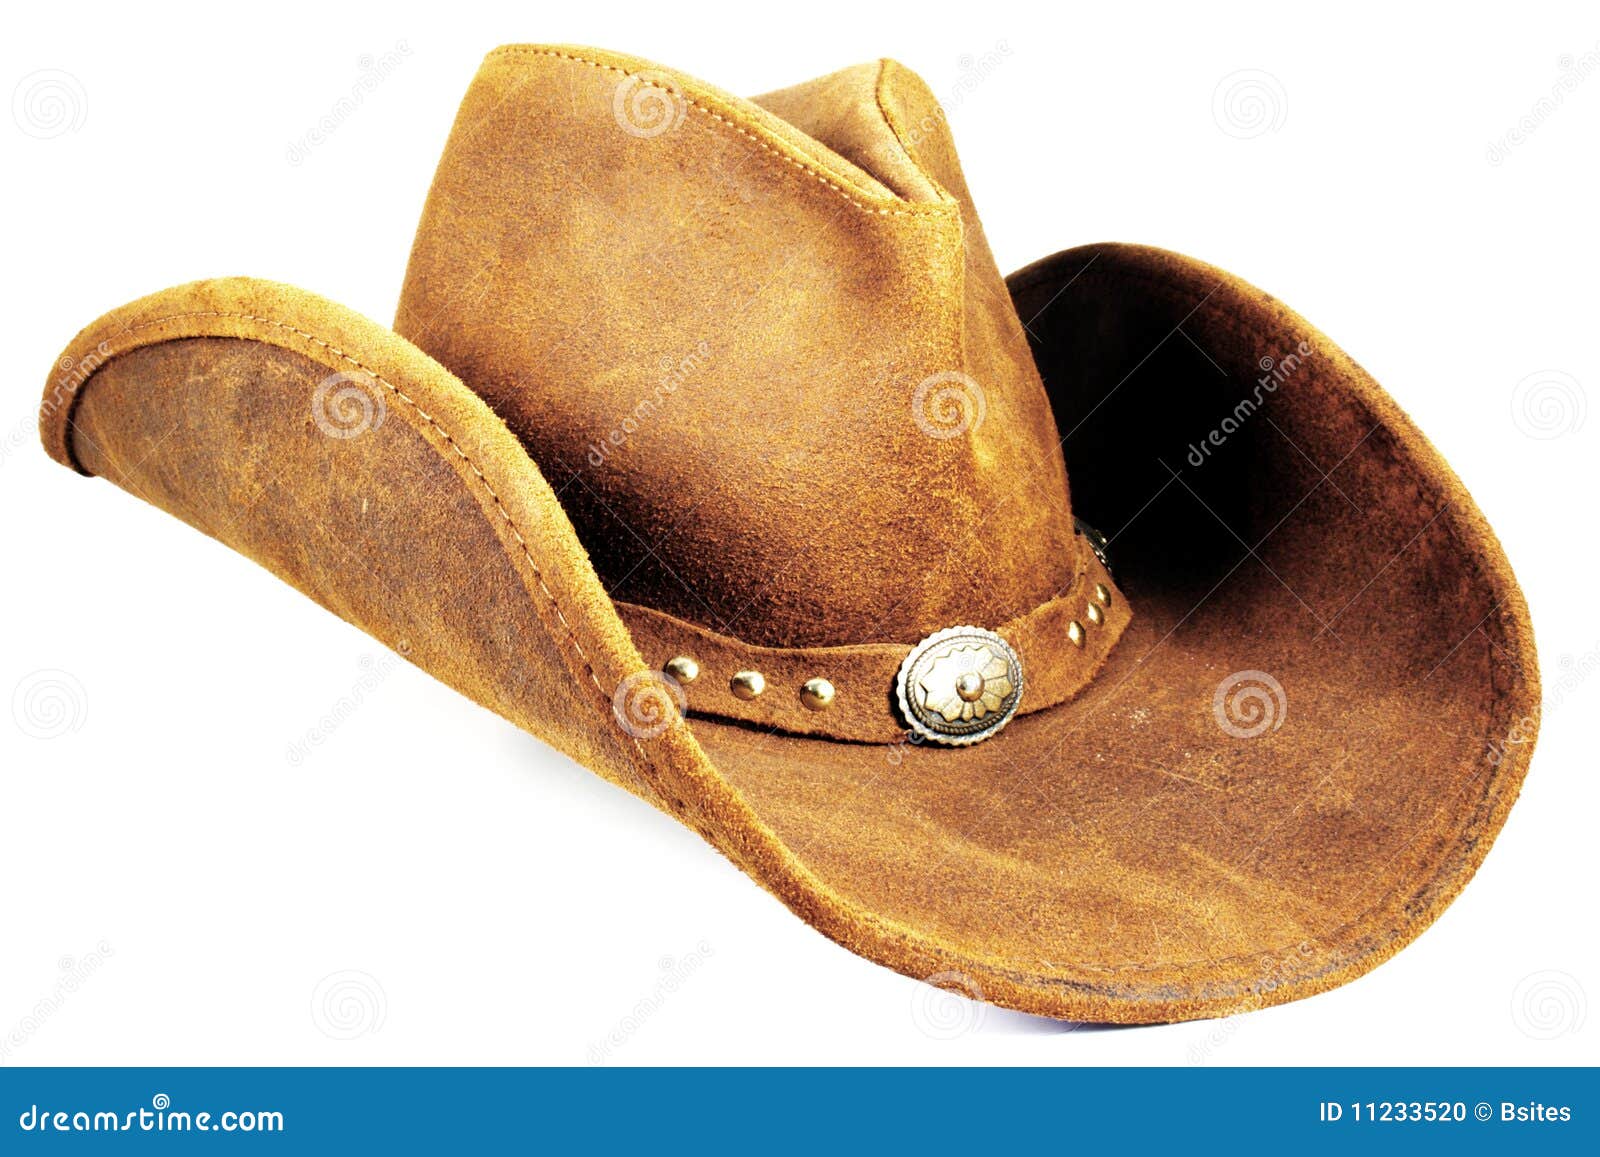 De qué material son los sombreros vaqueros